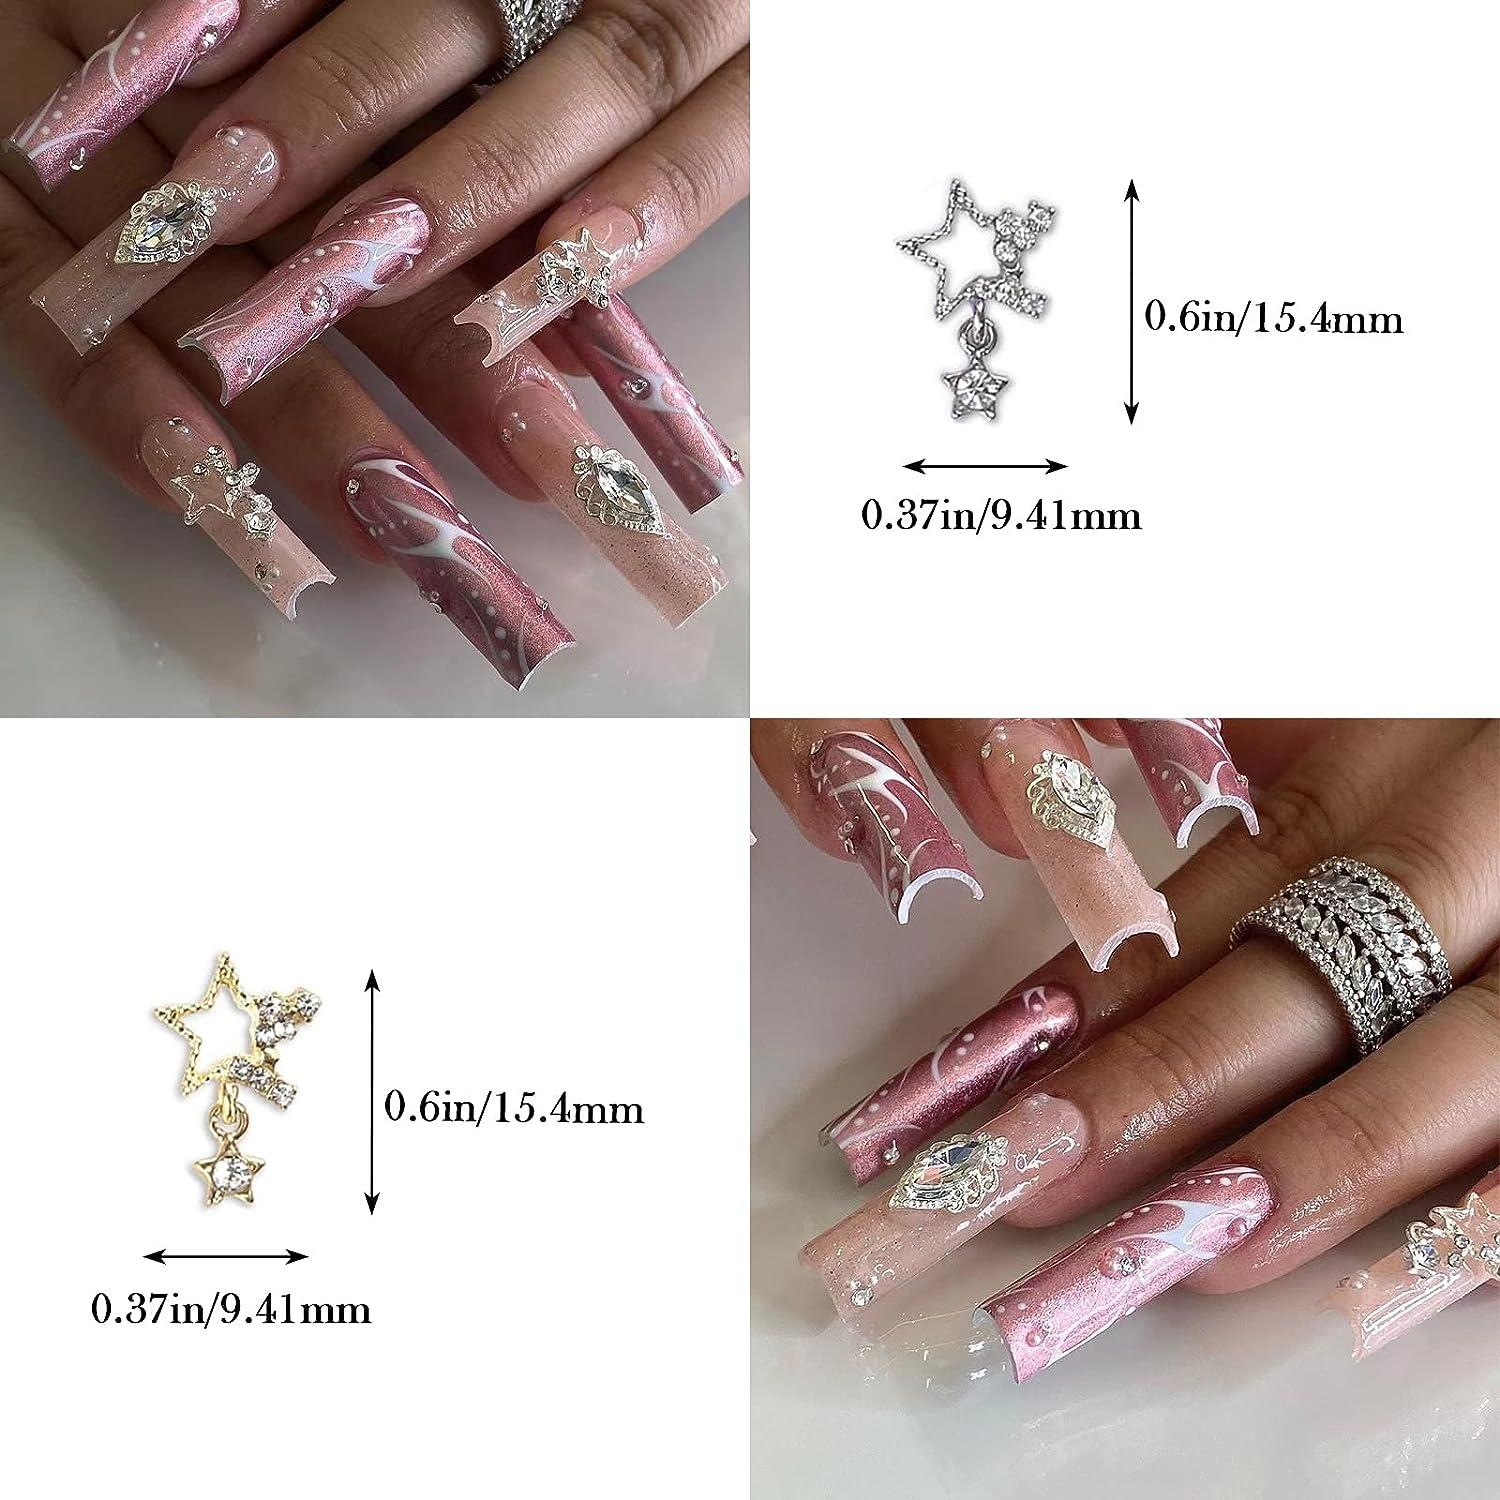 Baoximong 20 PCS Nail Art Charms Star Nail Charms for Acrylic Nails 3D  Shiny Nail Art Supplies Gold Silver Nail Gems Crystals Jewelry Design Nail